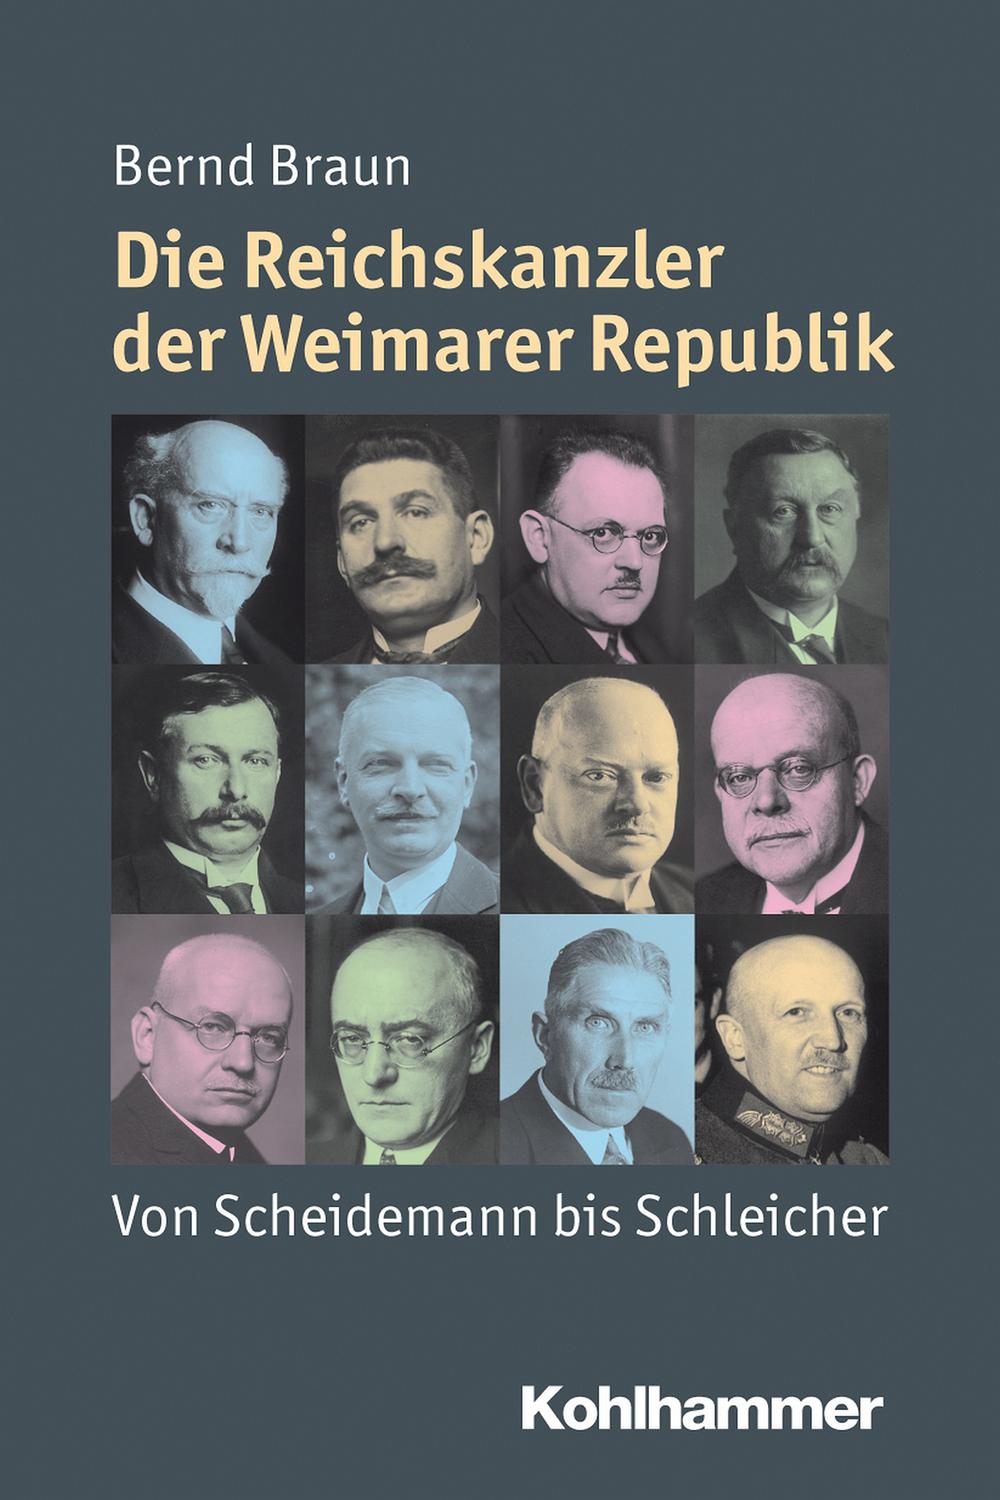 Die Reichskanzler der Weimarer Republik - Bernd Braun,Julia Angster, Peter Steinbach, Reinhold Weber,